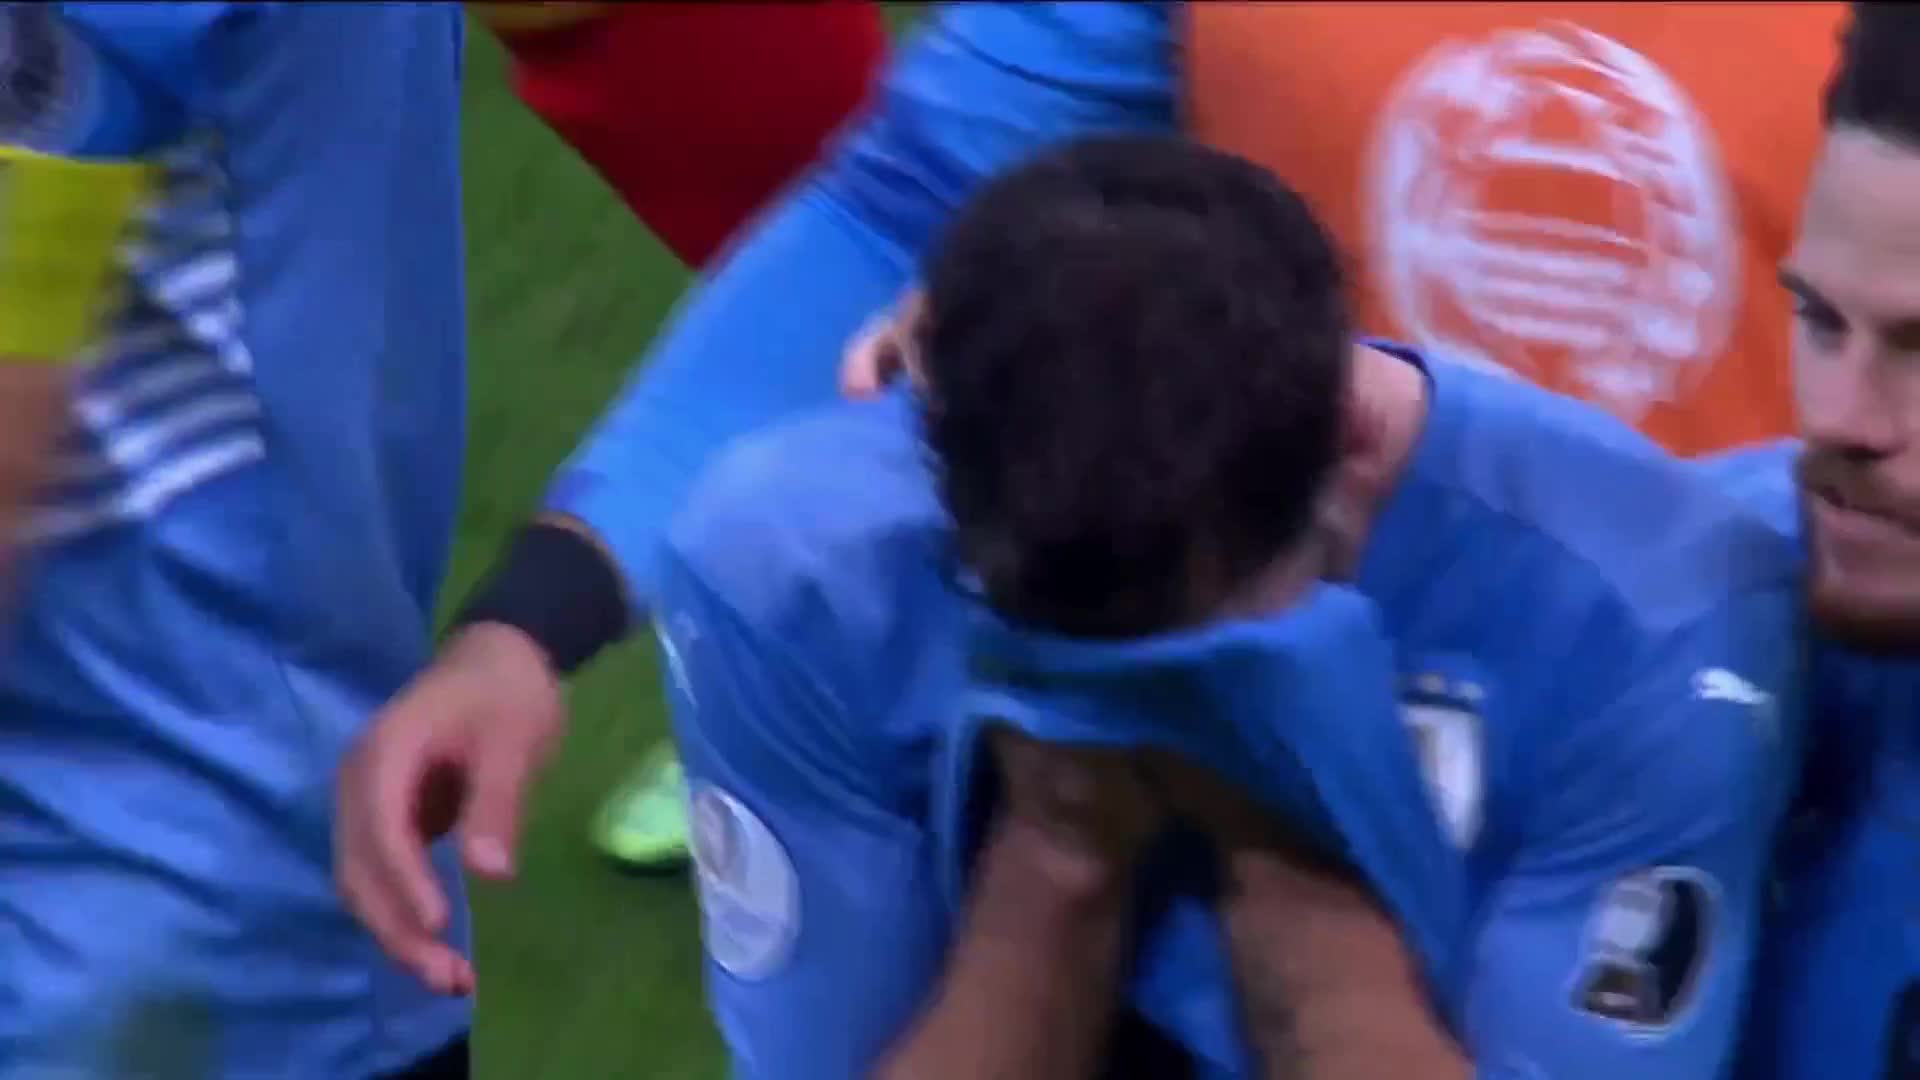 射失关键点球自责 乌拉圭球员一路哭到尾返回更衣室